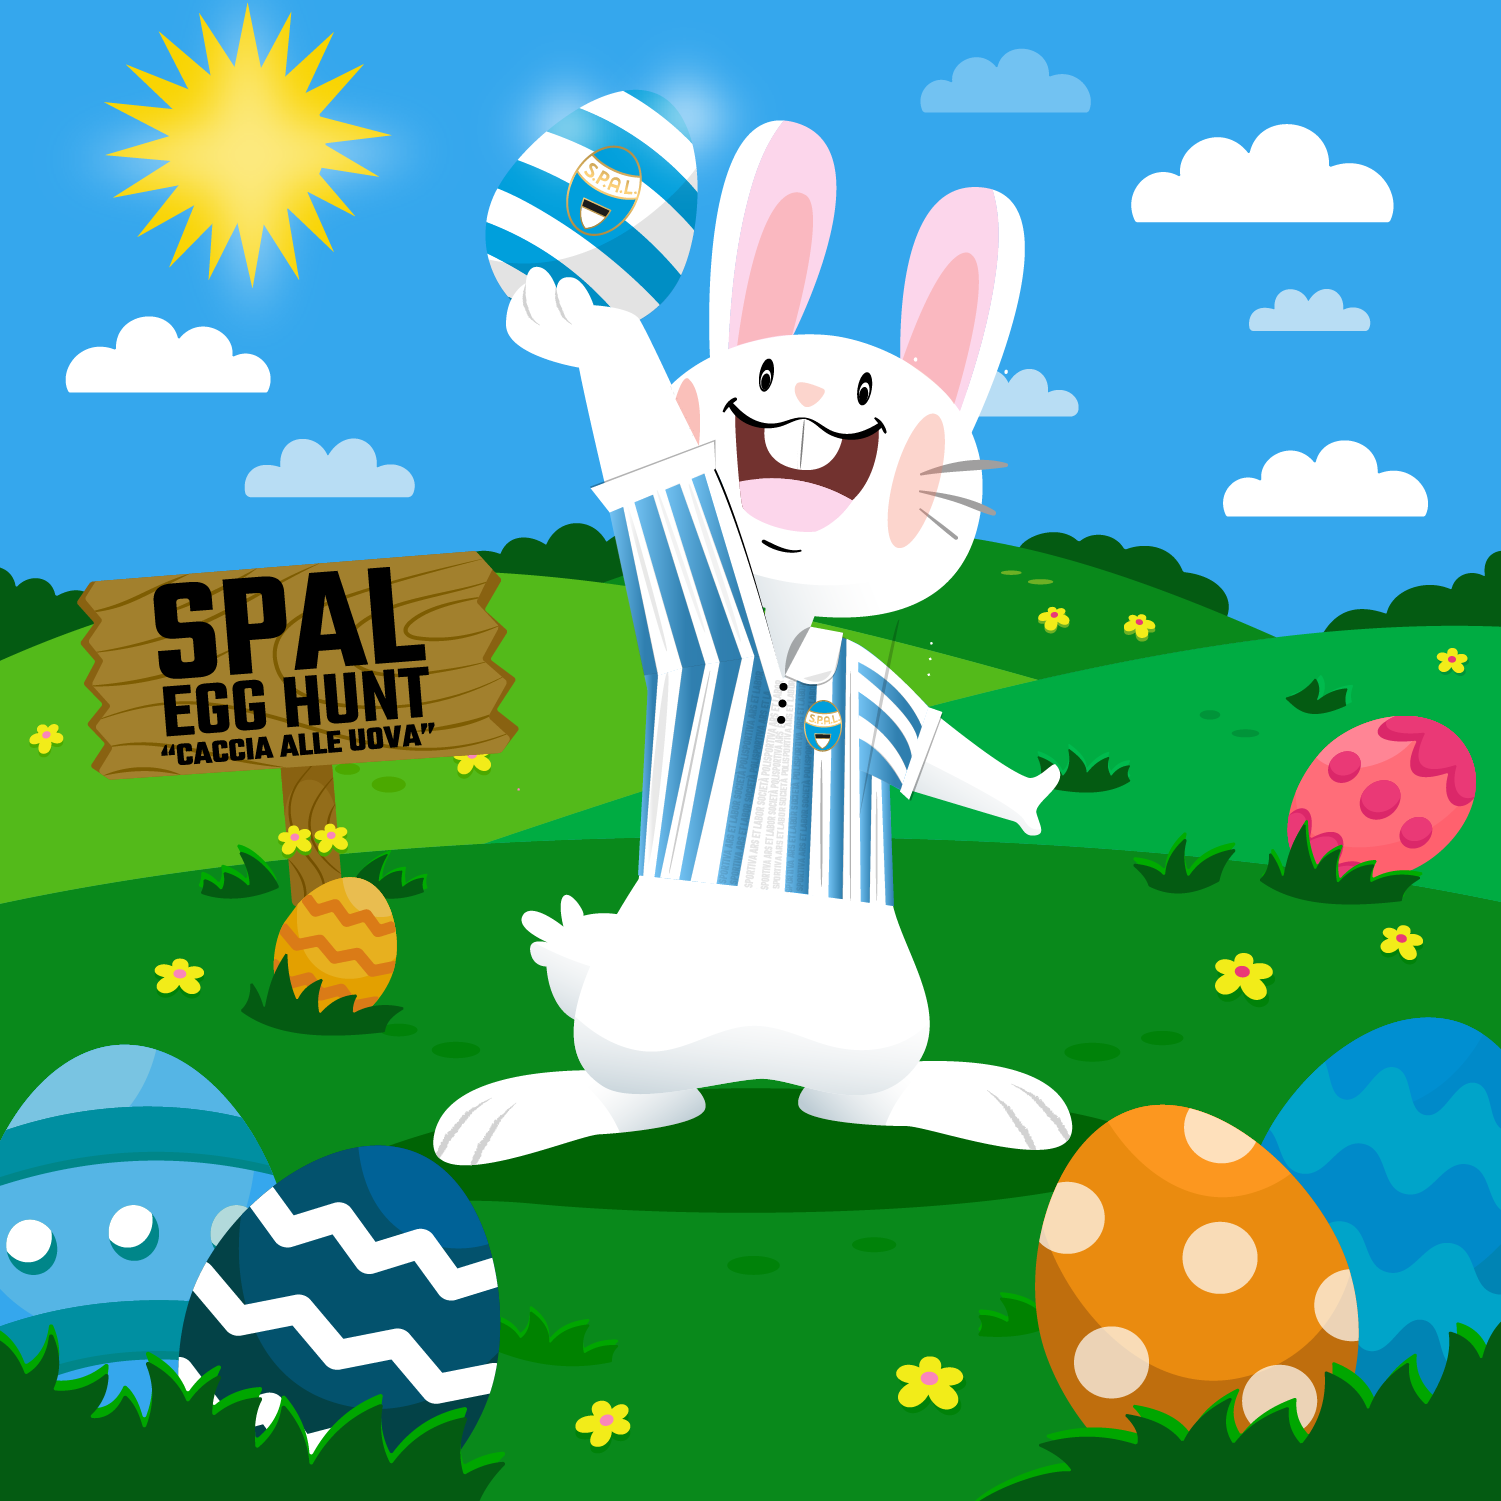 Domenica 2 aprile appuntamento con "SPAL Easter Egg Hunt"